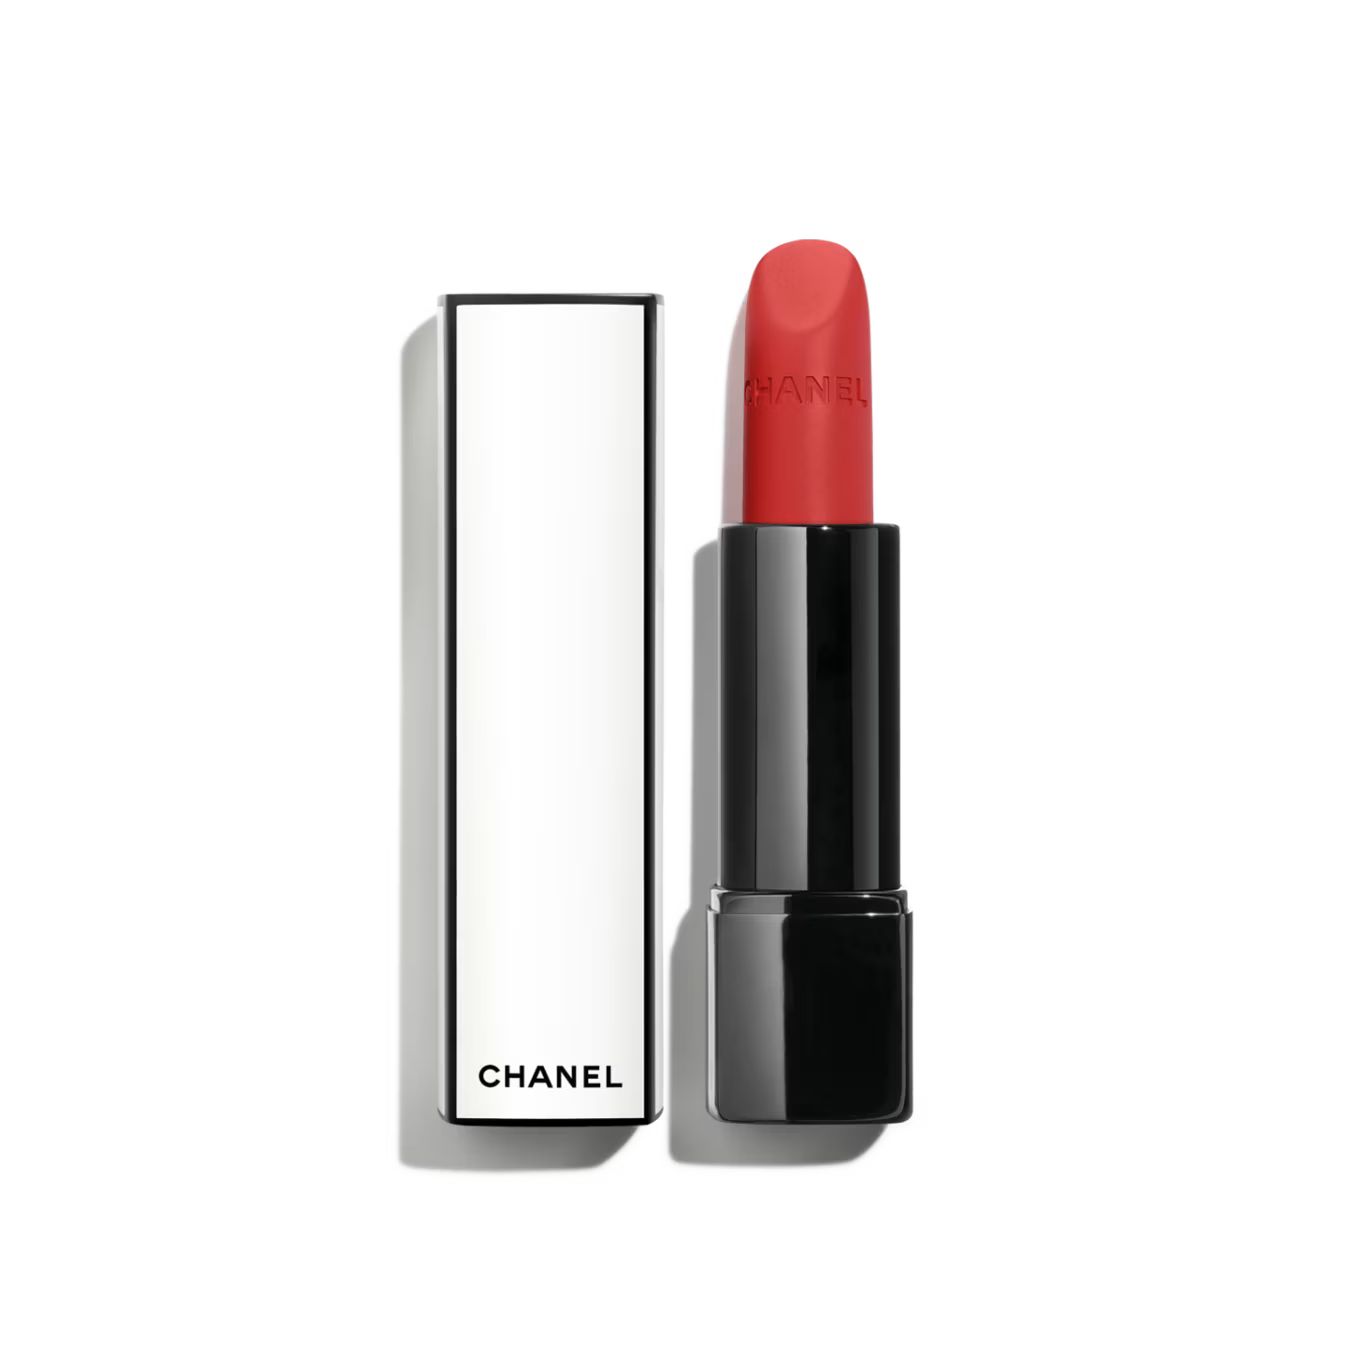 ROUGE ALLURE VELVET NUIT BLANCHE Luminous matte lip colour 02:00 | CHANEL | Chanel, Inc. (US)